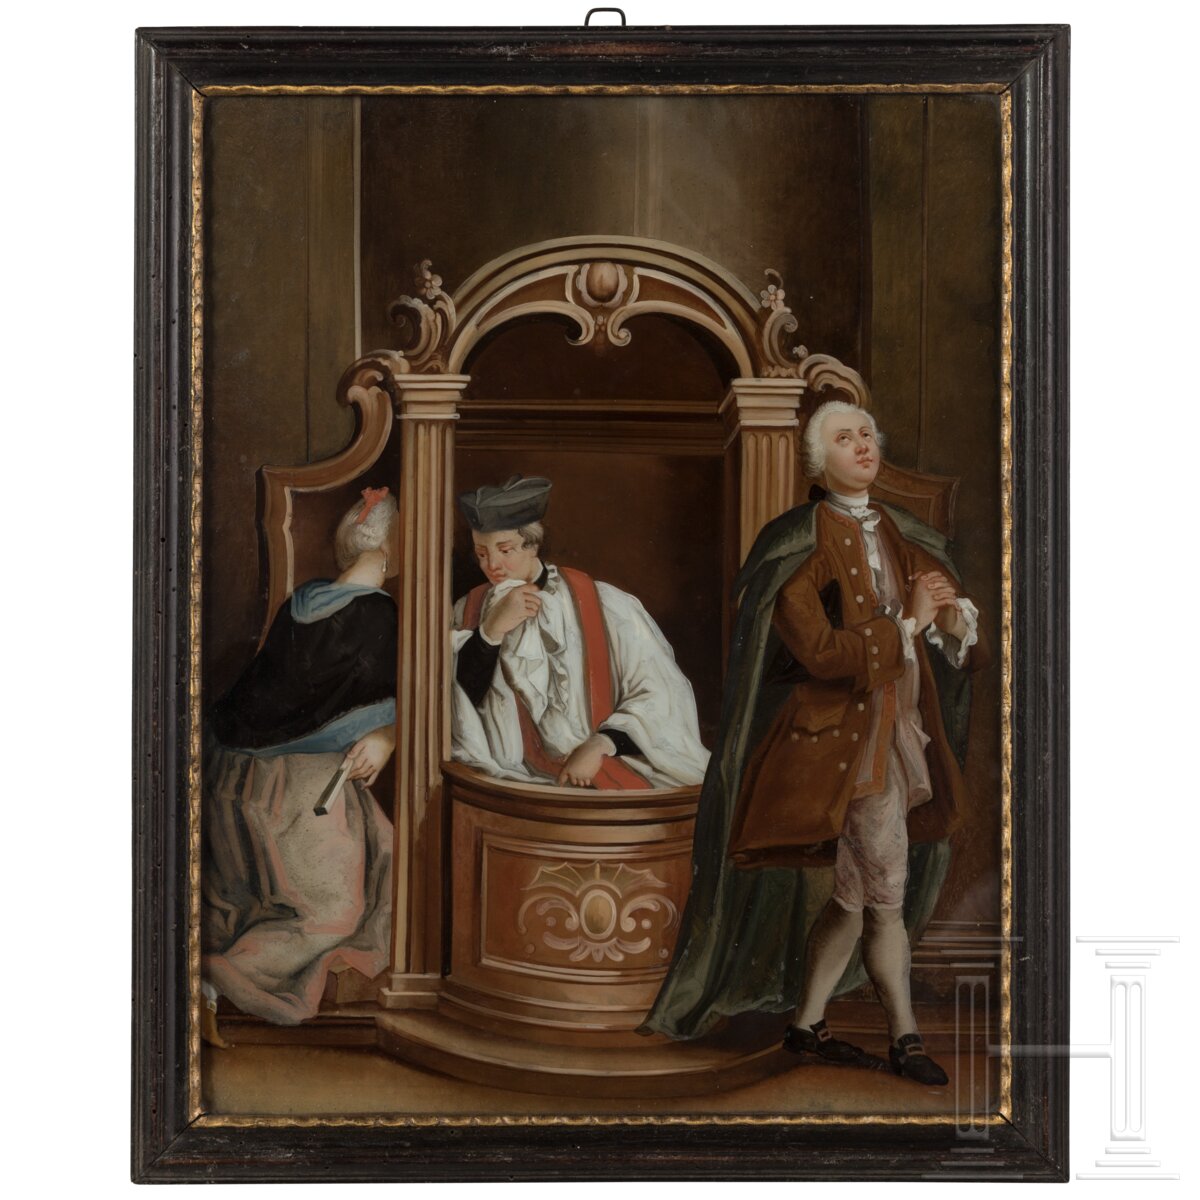 Sechs Hinterglasbilder mit sechs Sakramenten, Augsburg oder Murnau, 18. Jhdt.  - Bild 6 aus 19